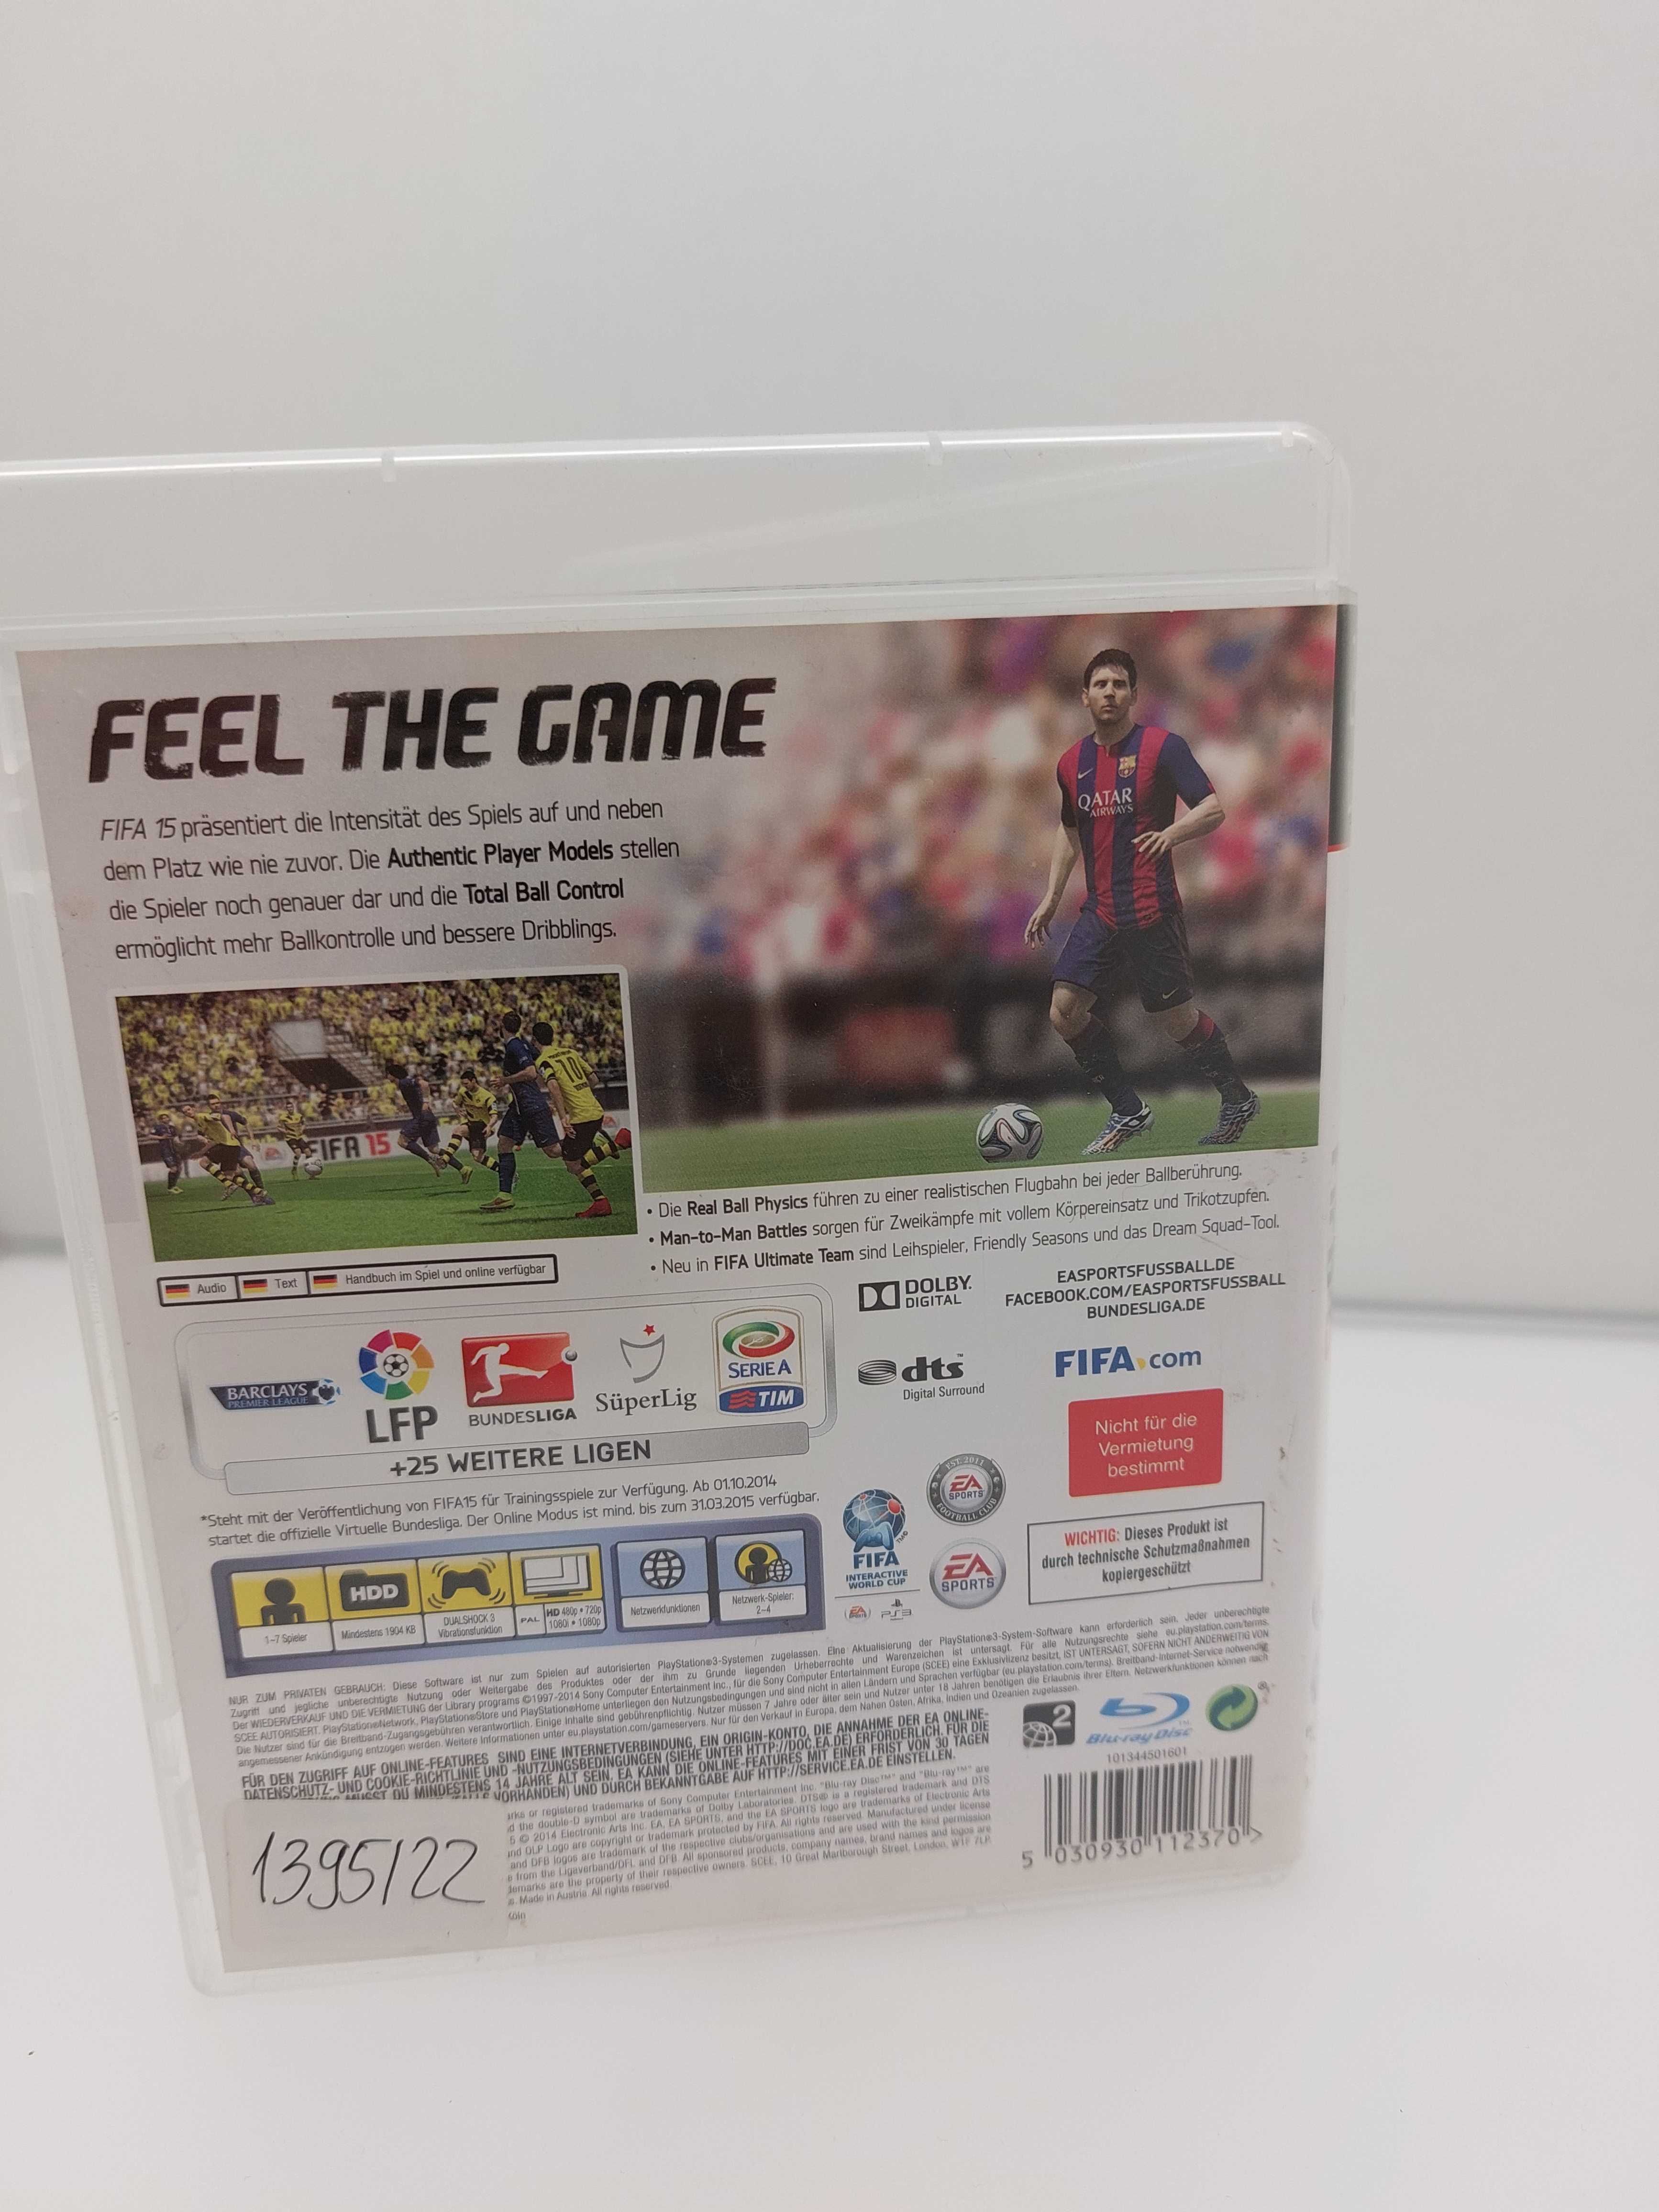 Fifa 15 PS3 wesja pudełkowa(1395/22PSZ)